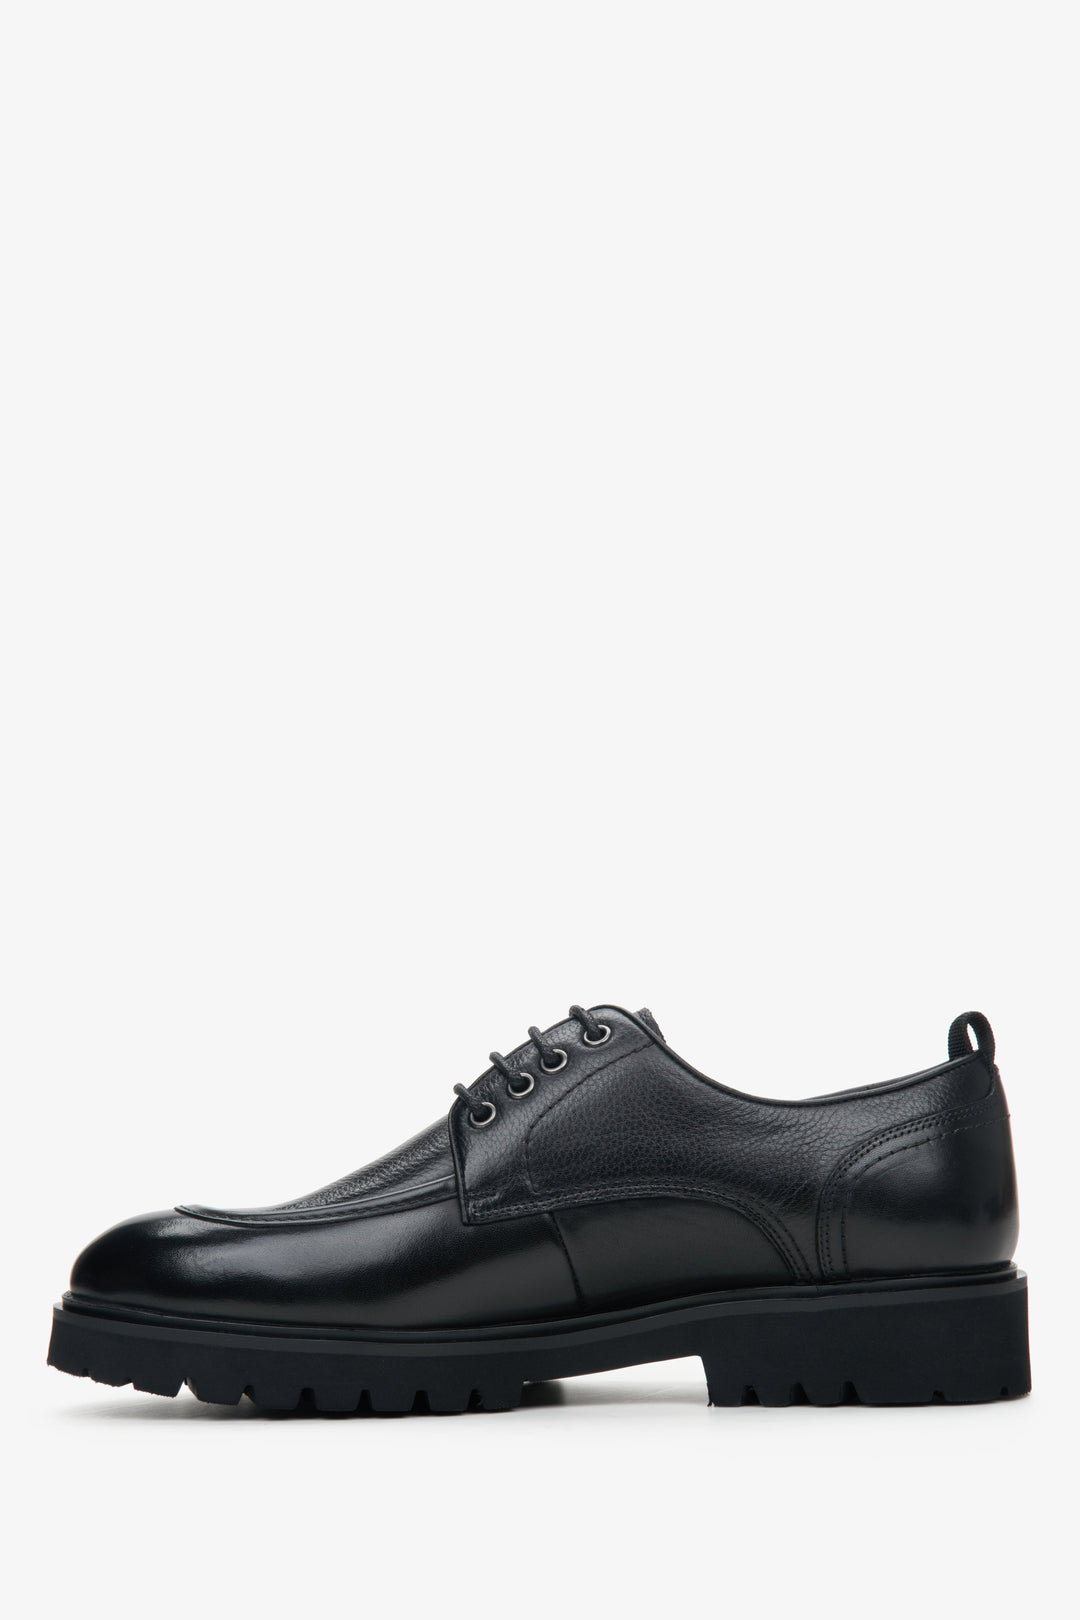 Estro black men's leather brogues - shoe profile.